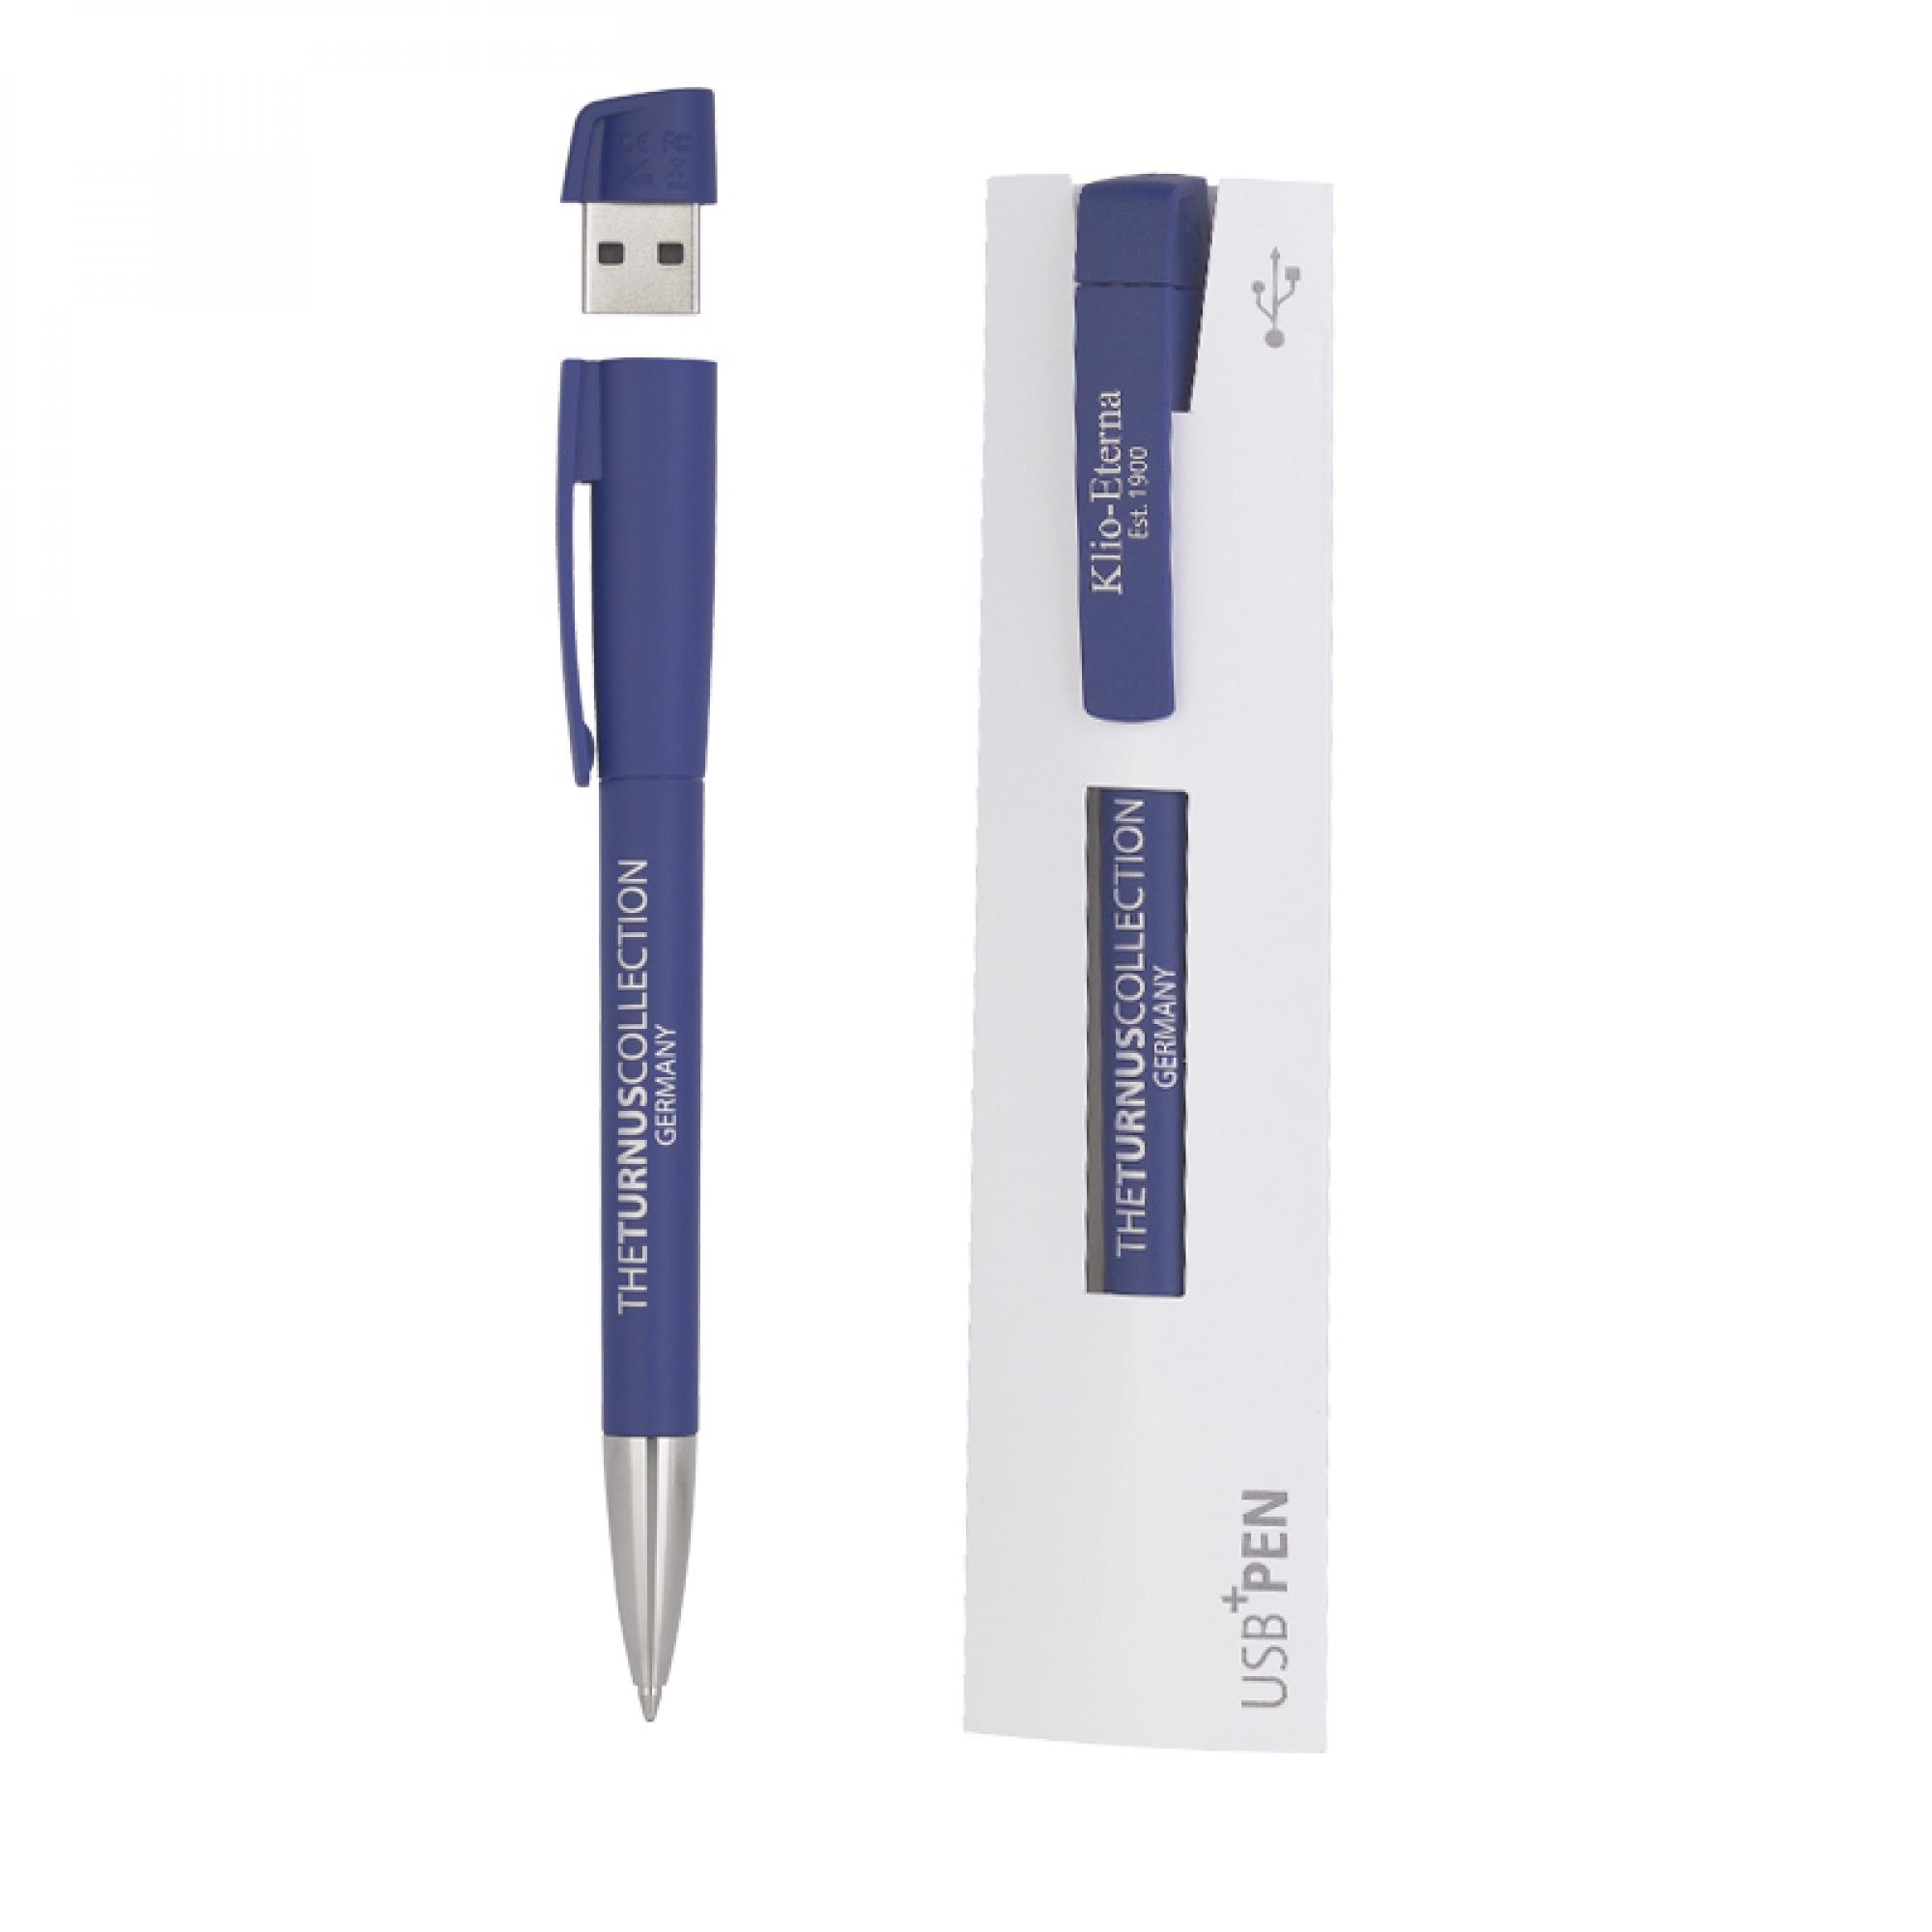 Ручка с флеш-картой USB 16GB «TURNUSsofttouch M», цвет темно-синий, фото 2